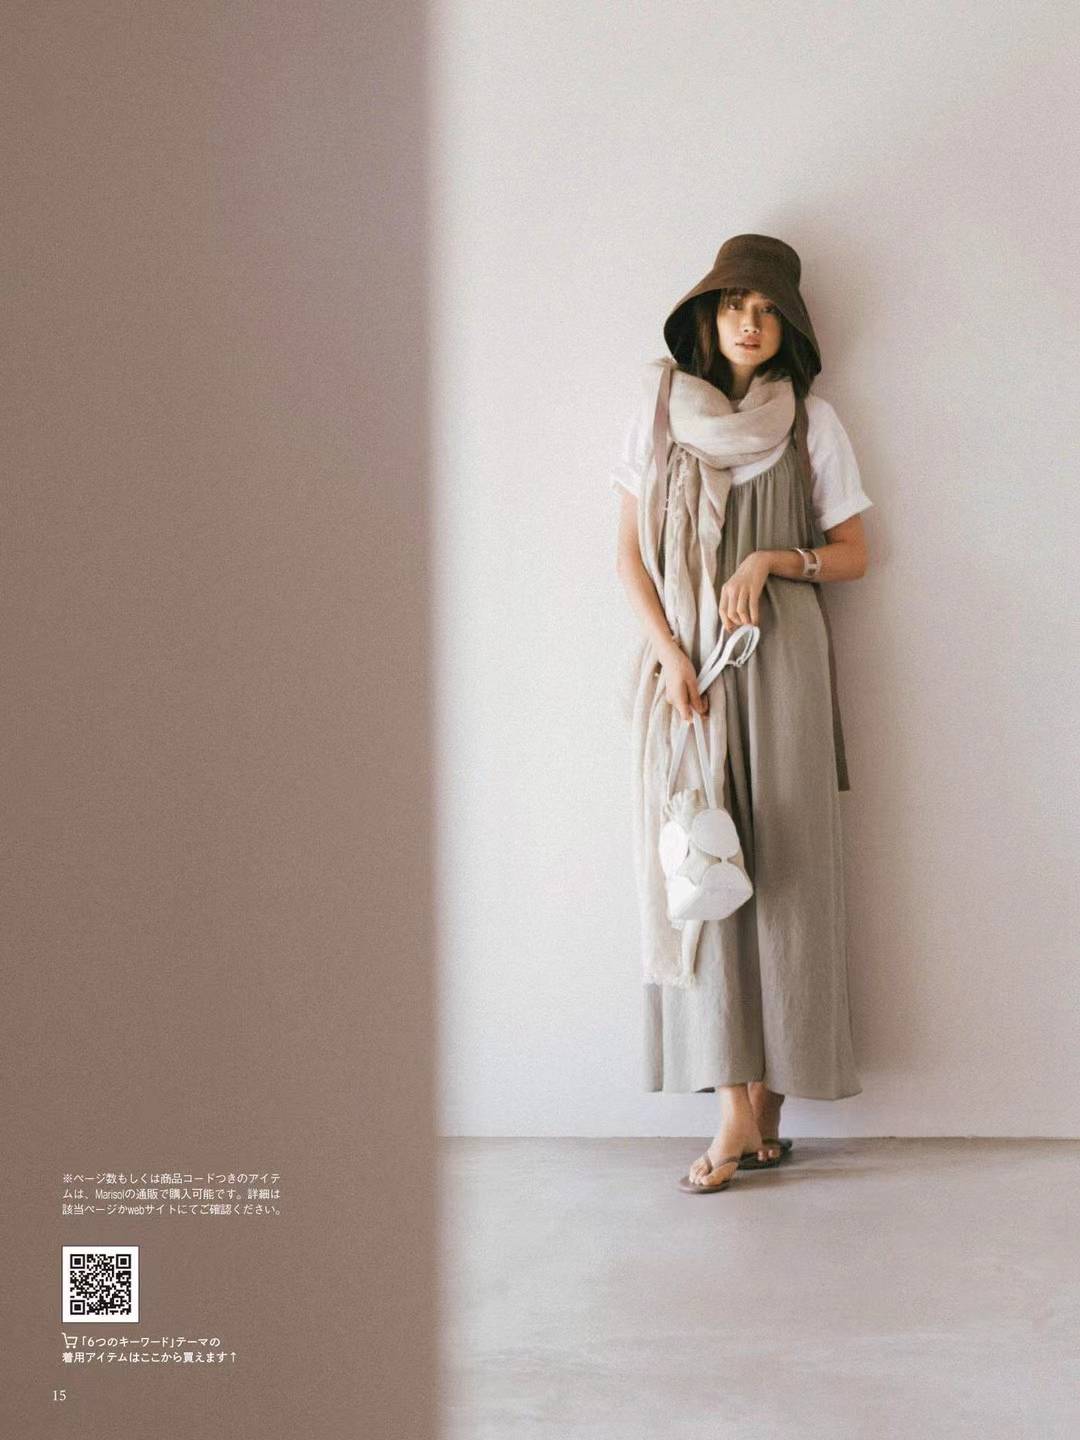 【瑜伽健身上新】 【日本】 030 Marisol 2022年5月 日本畅销成熟女性时尚杂志